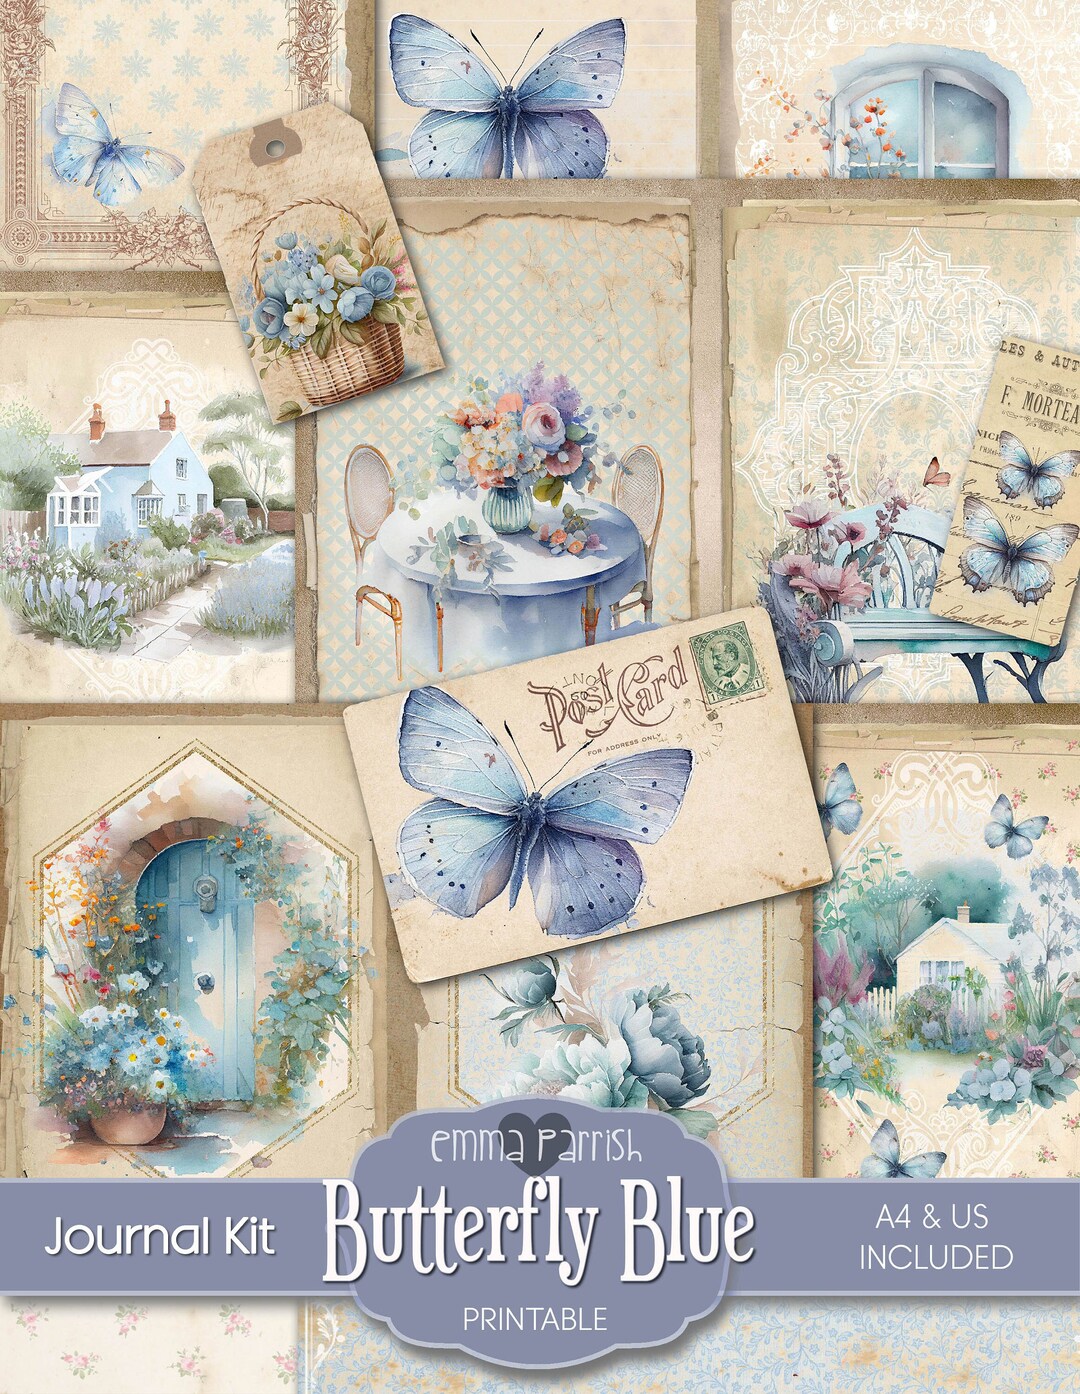 Birds & Butterflies Lined Journal Paper Pack - Digital - 10 Designs –  Dreamz Etc